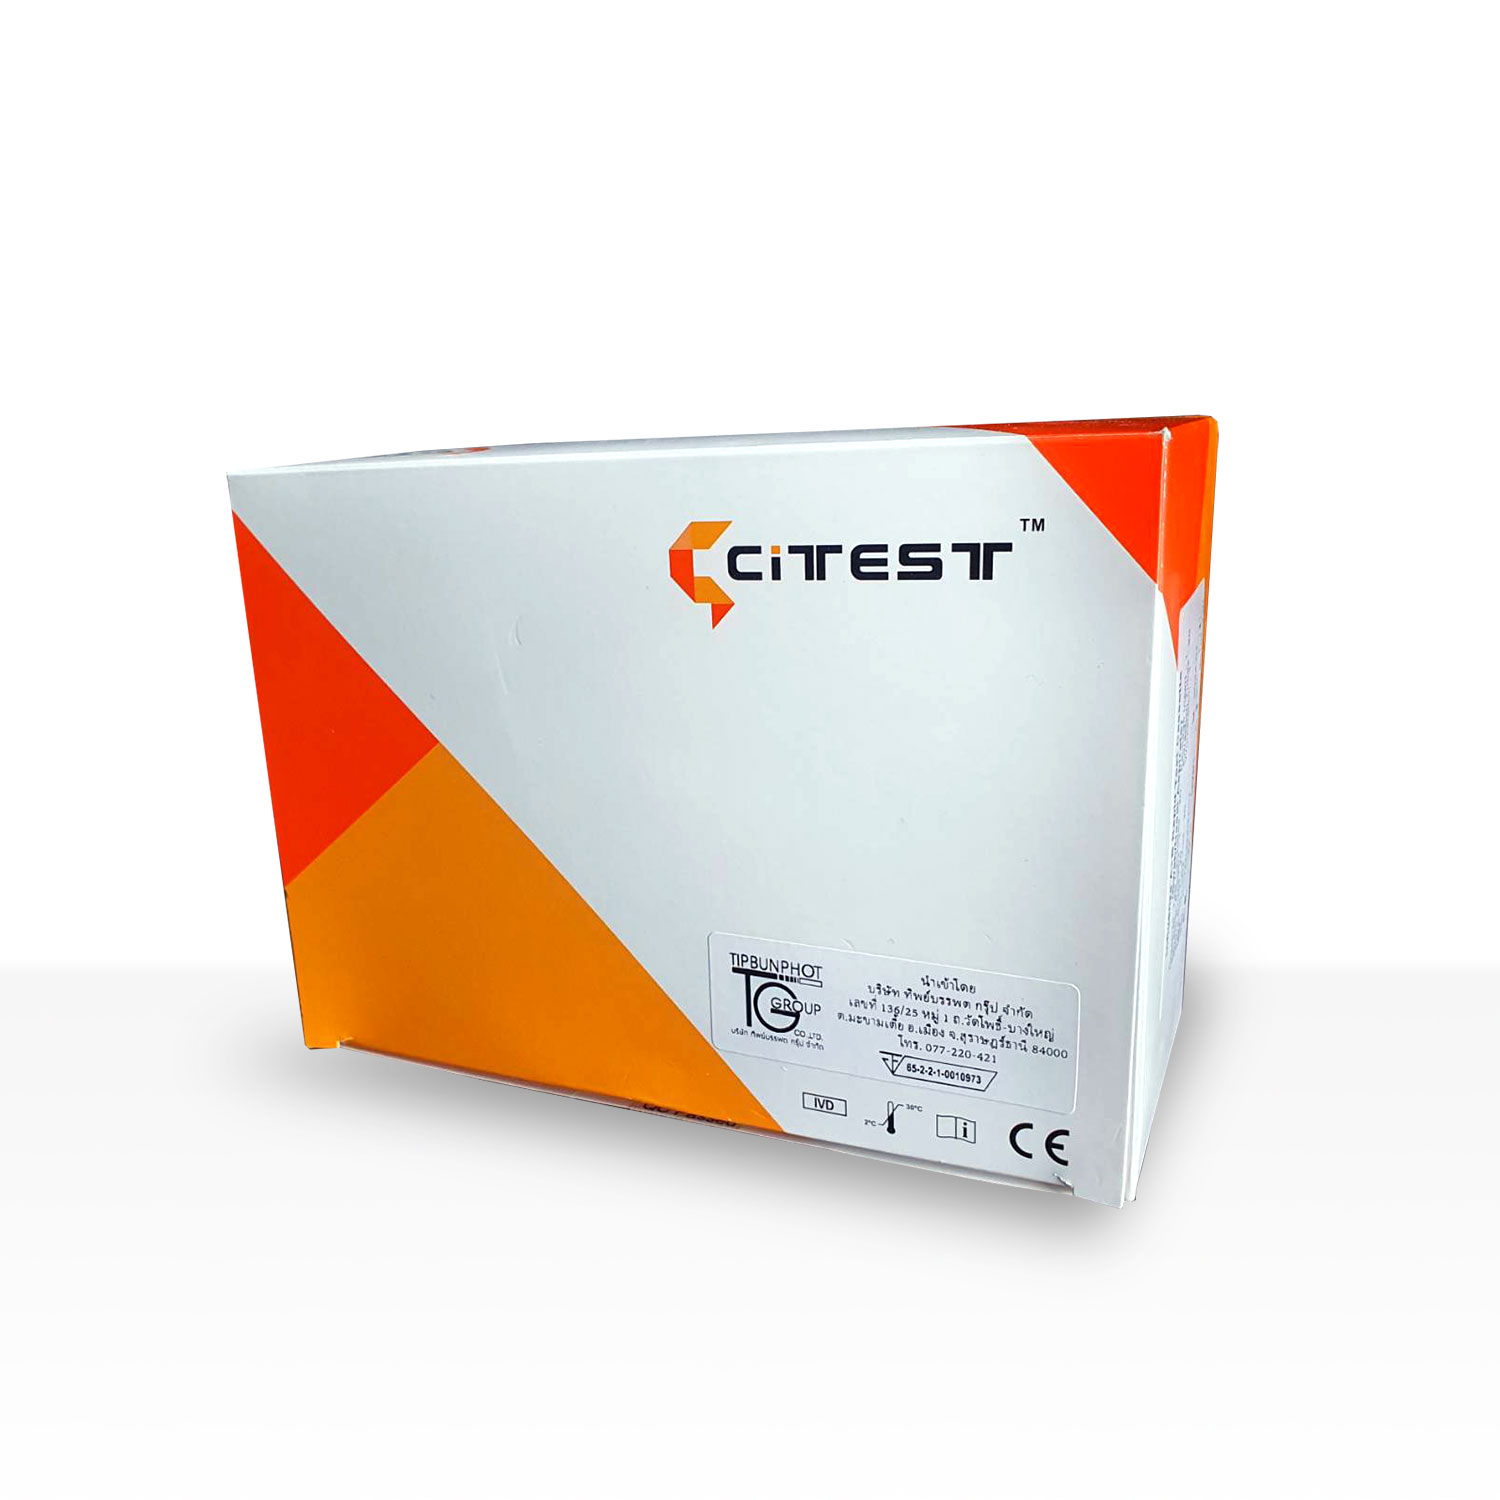 CITEST Typhoid Rapid Test (Cassette)